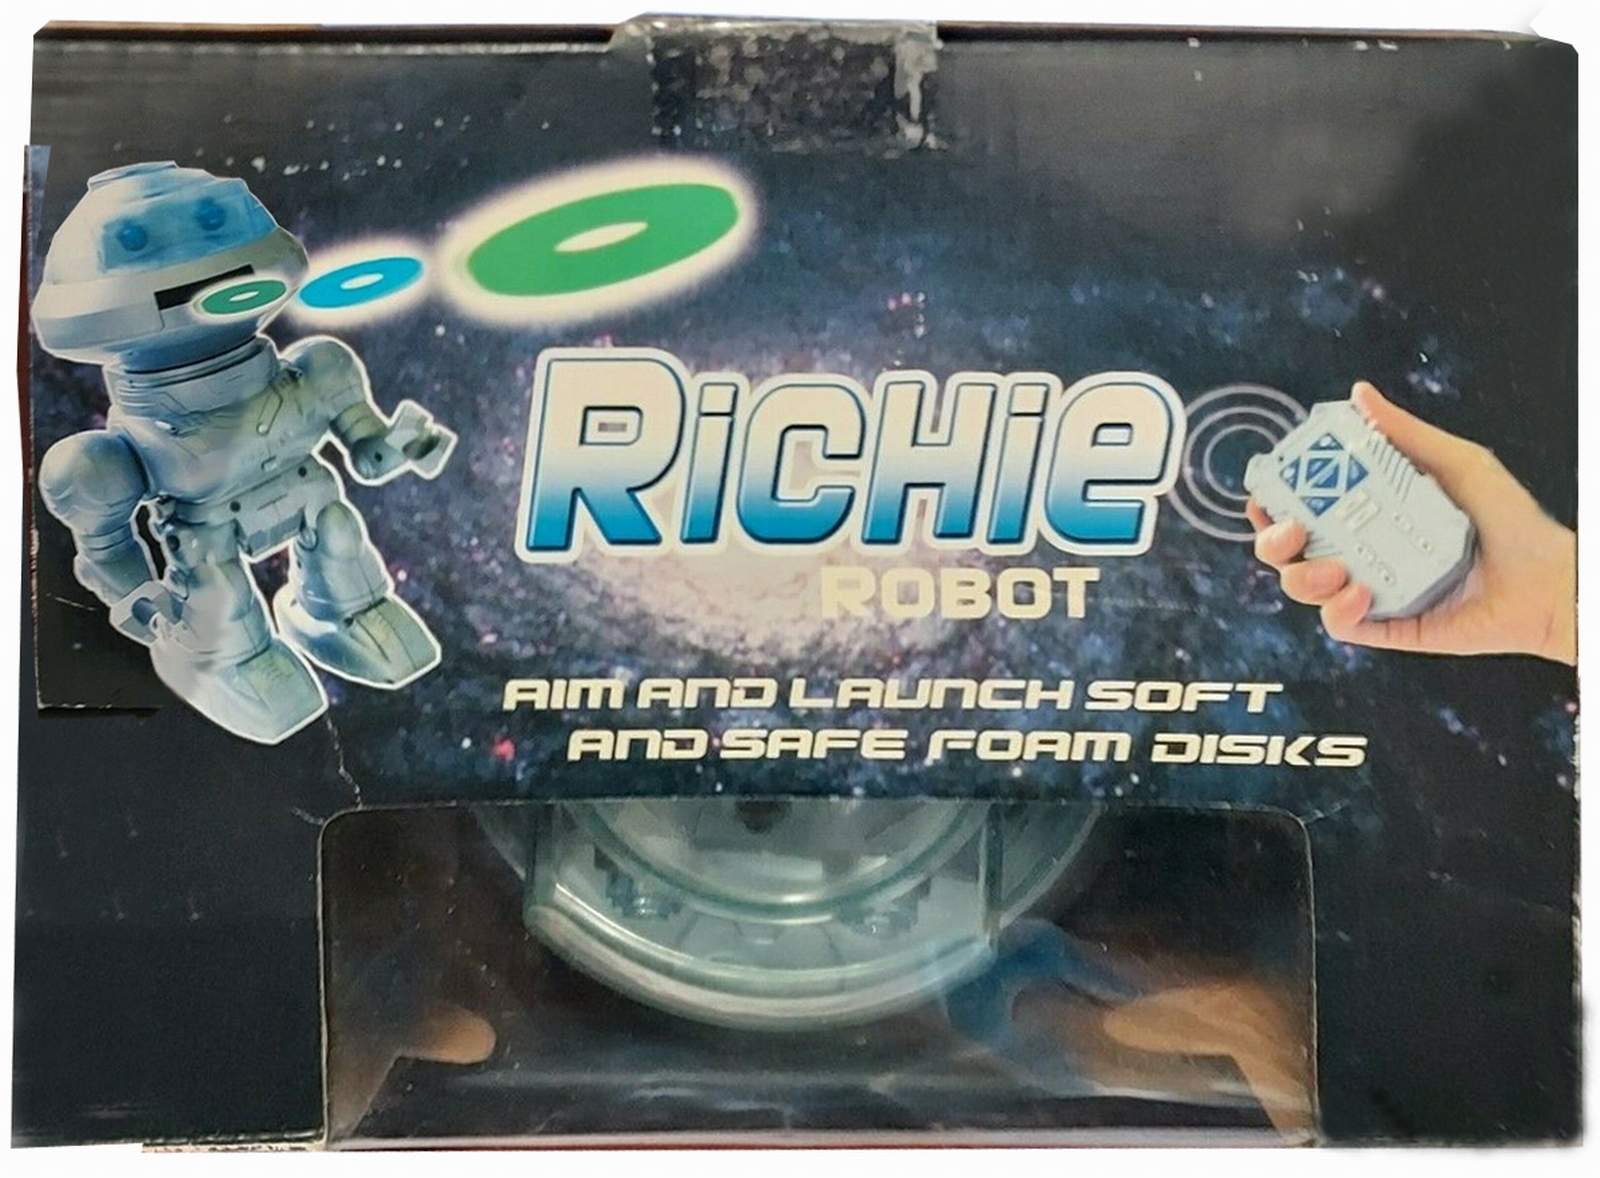 Richie Robot